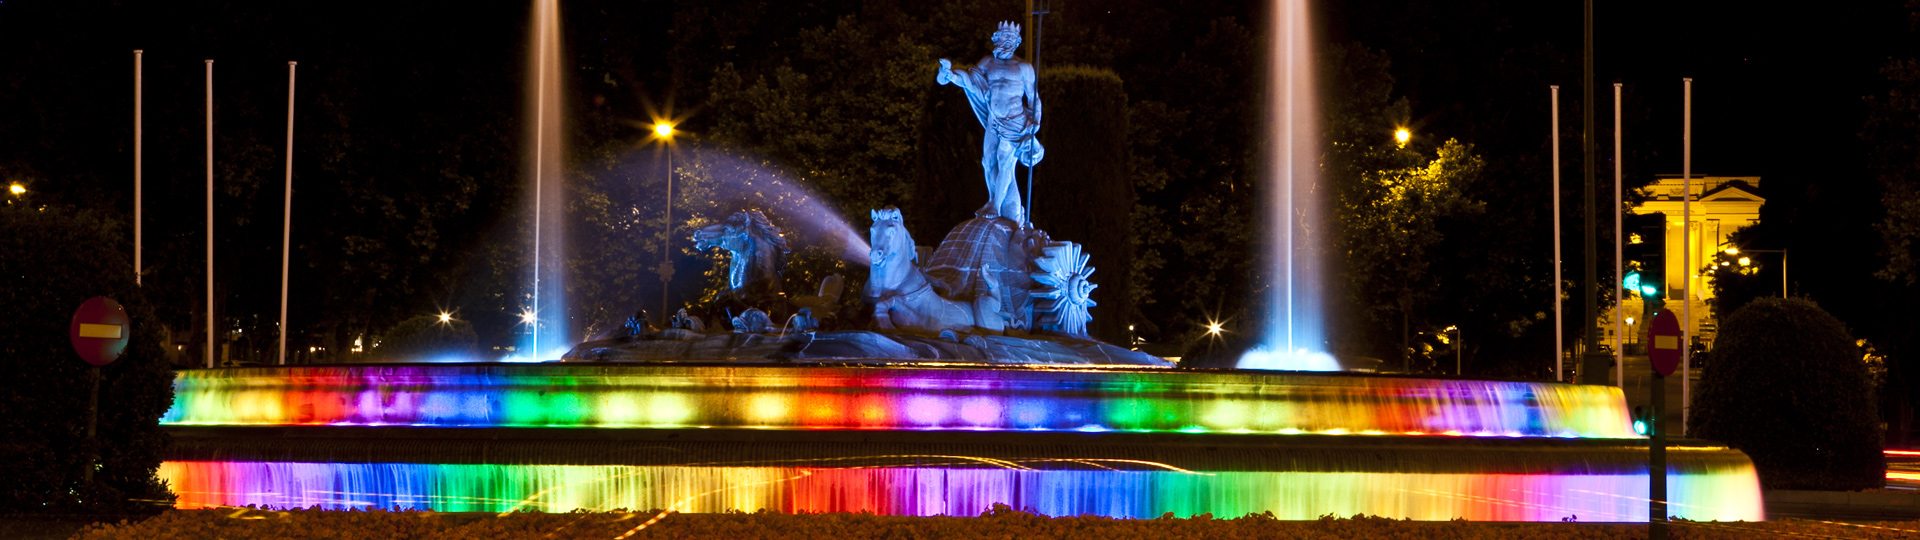 De Neptunus-fontein in Madrid, passend gekleed voor World Pride Day 